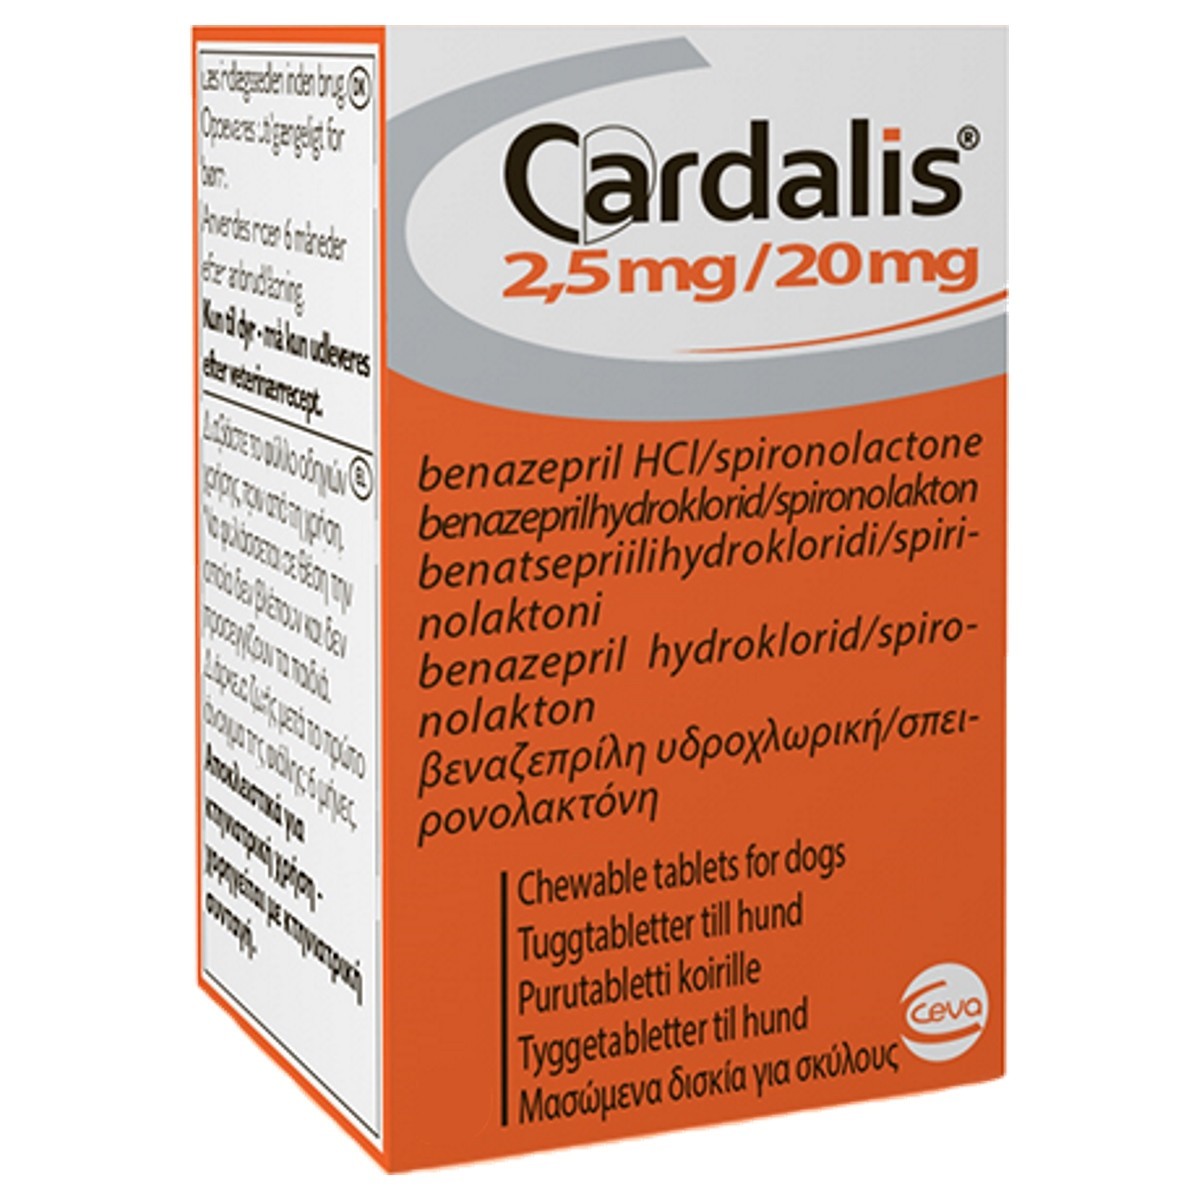 Купить кардалис 2.5 в москве. Кардалис 2.5. Кардалис 2,5/ 20 мг. Кардалис 2,5мг/20м. Кардалис 5 мг.